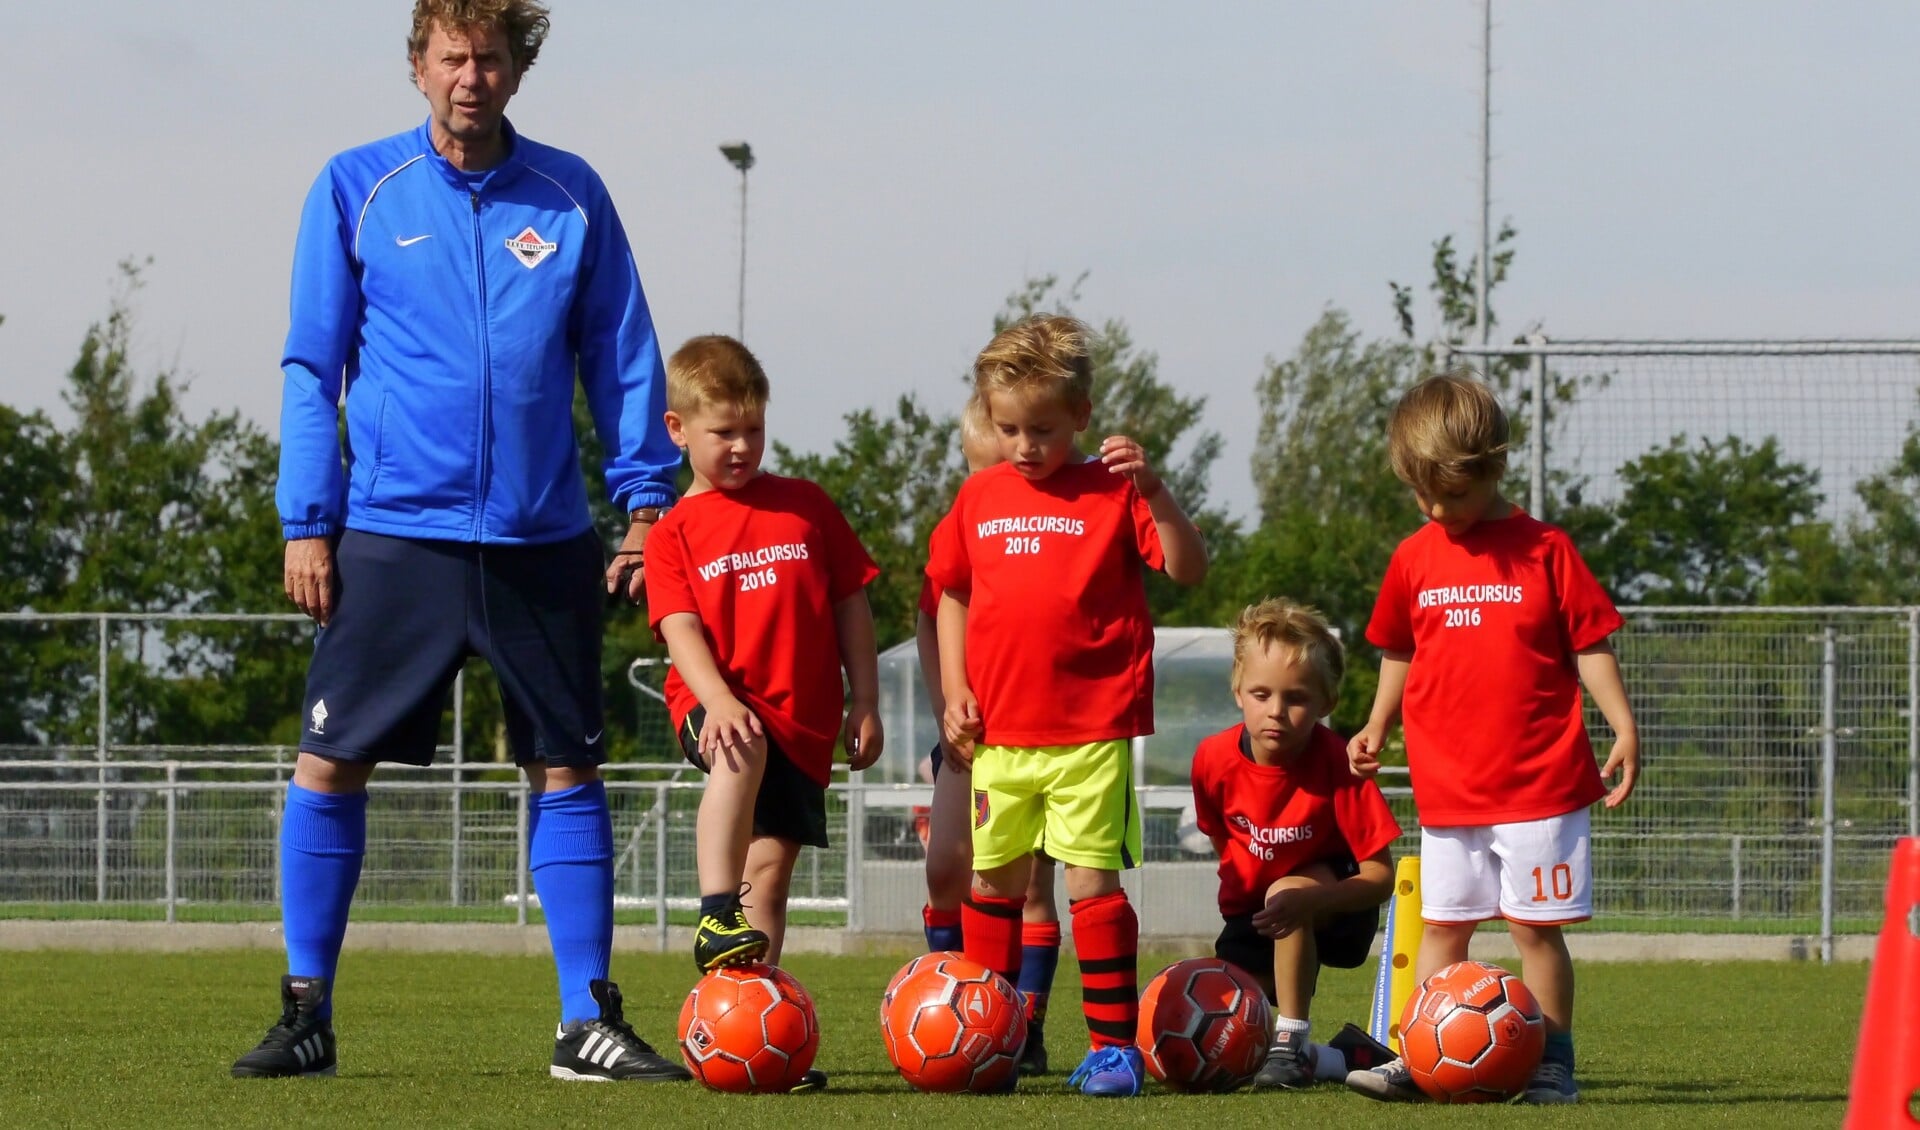 Laurens Mouter geeft drie trainingen aan de jeugd van de basisschool. | Foto: pr.